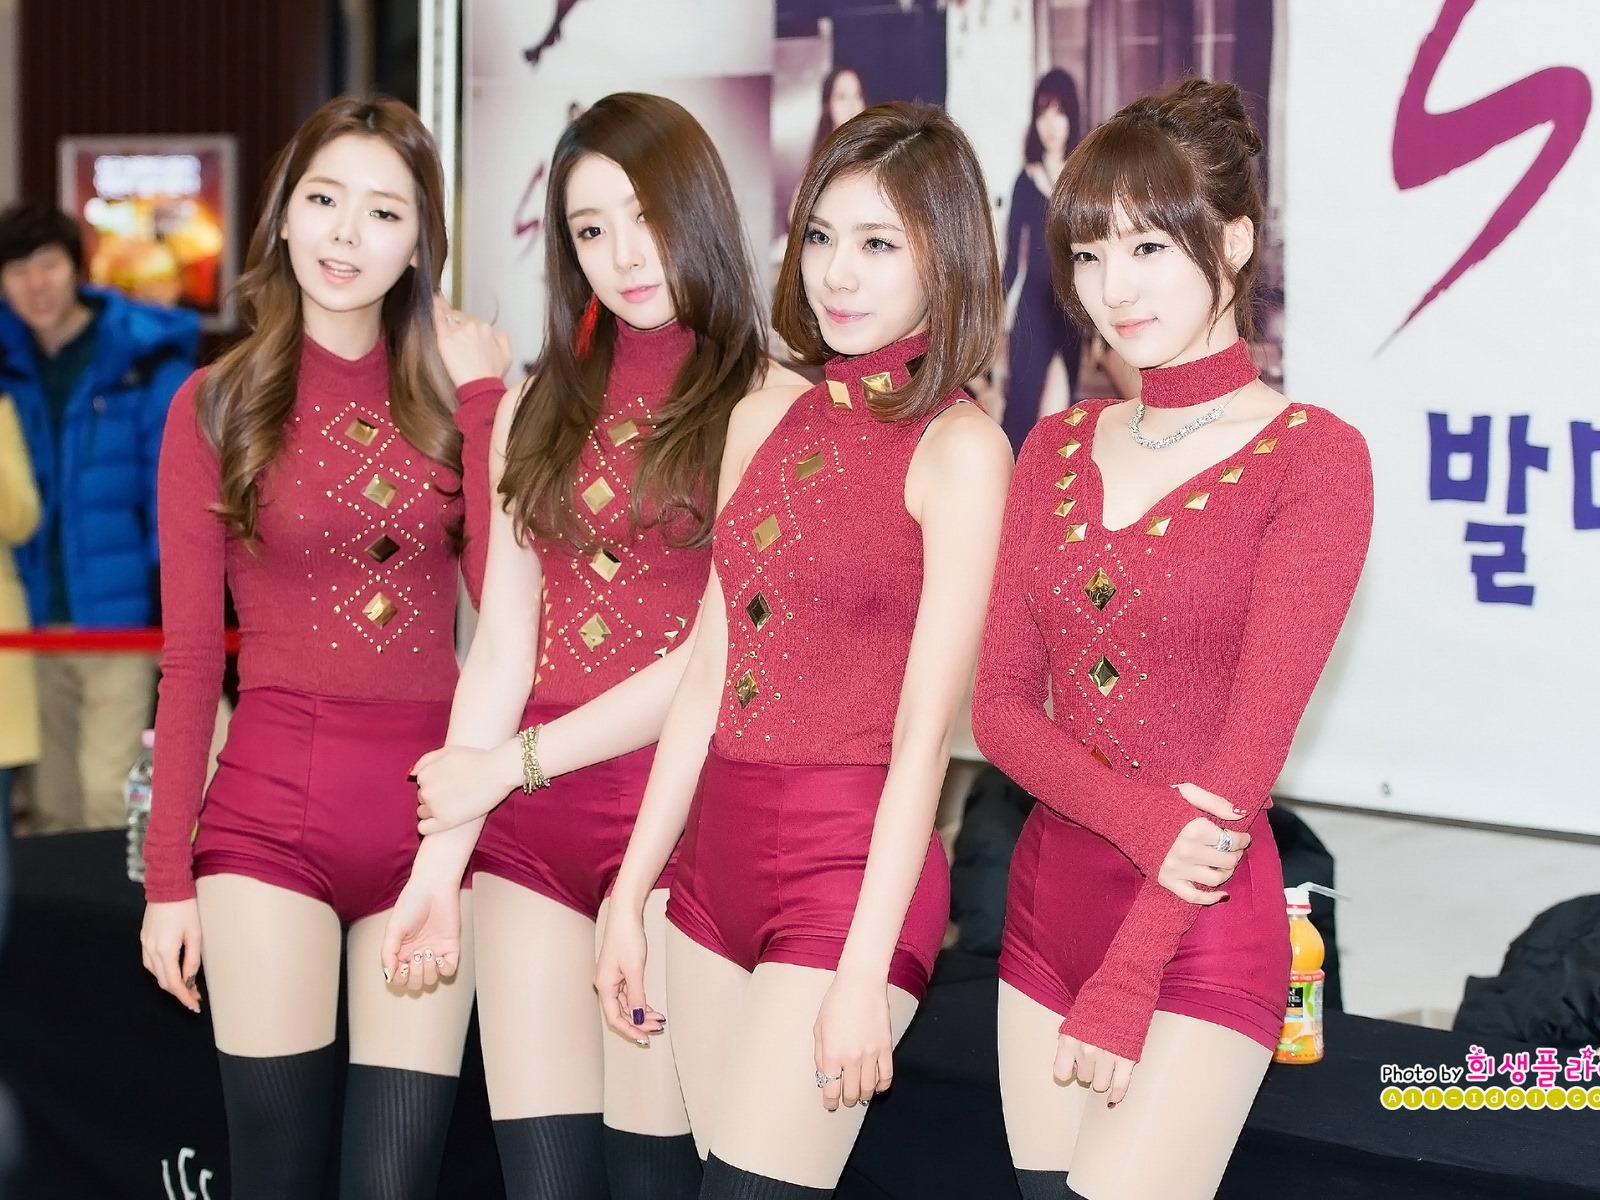 HD обои Звездная корейская музыка девушки группа #15 - 1600x1200